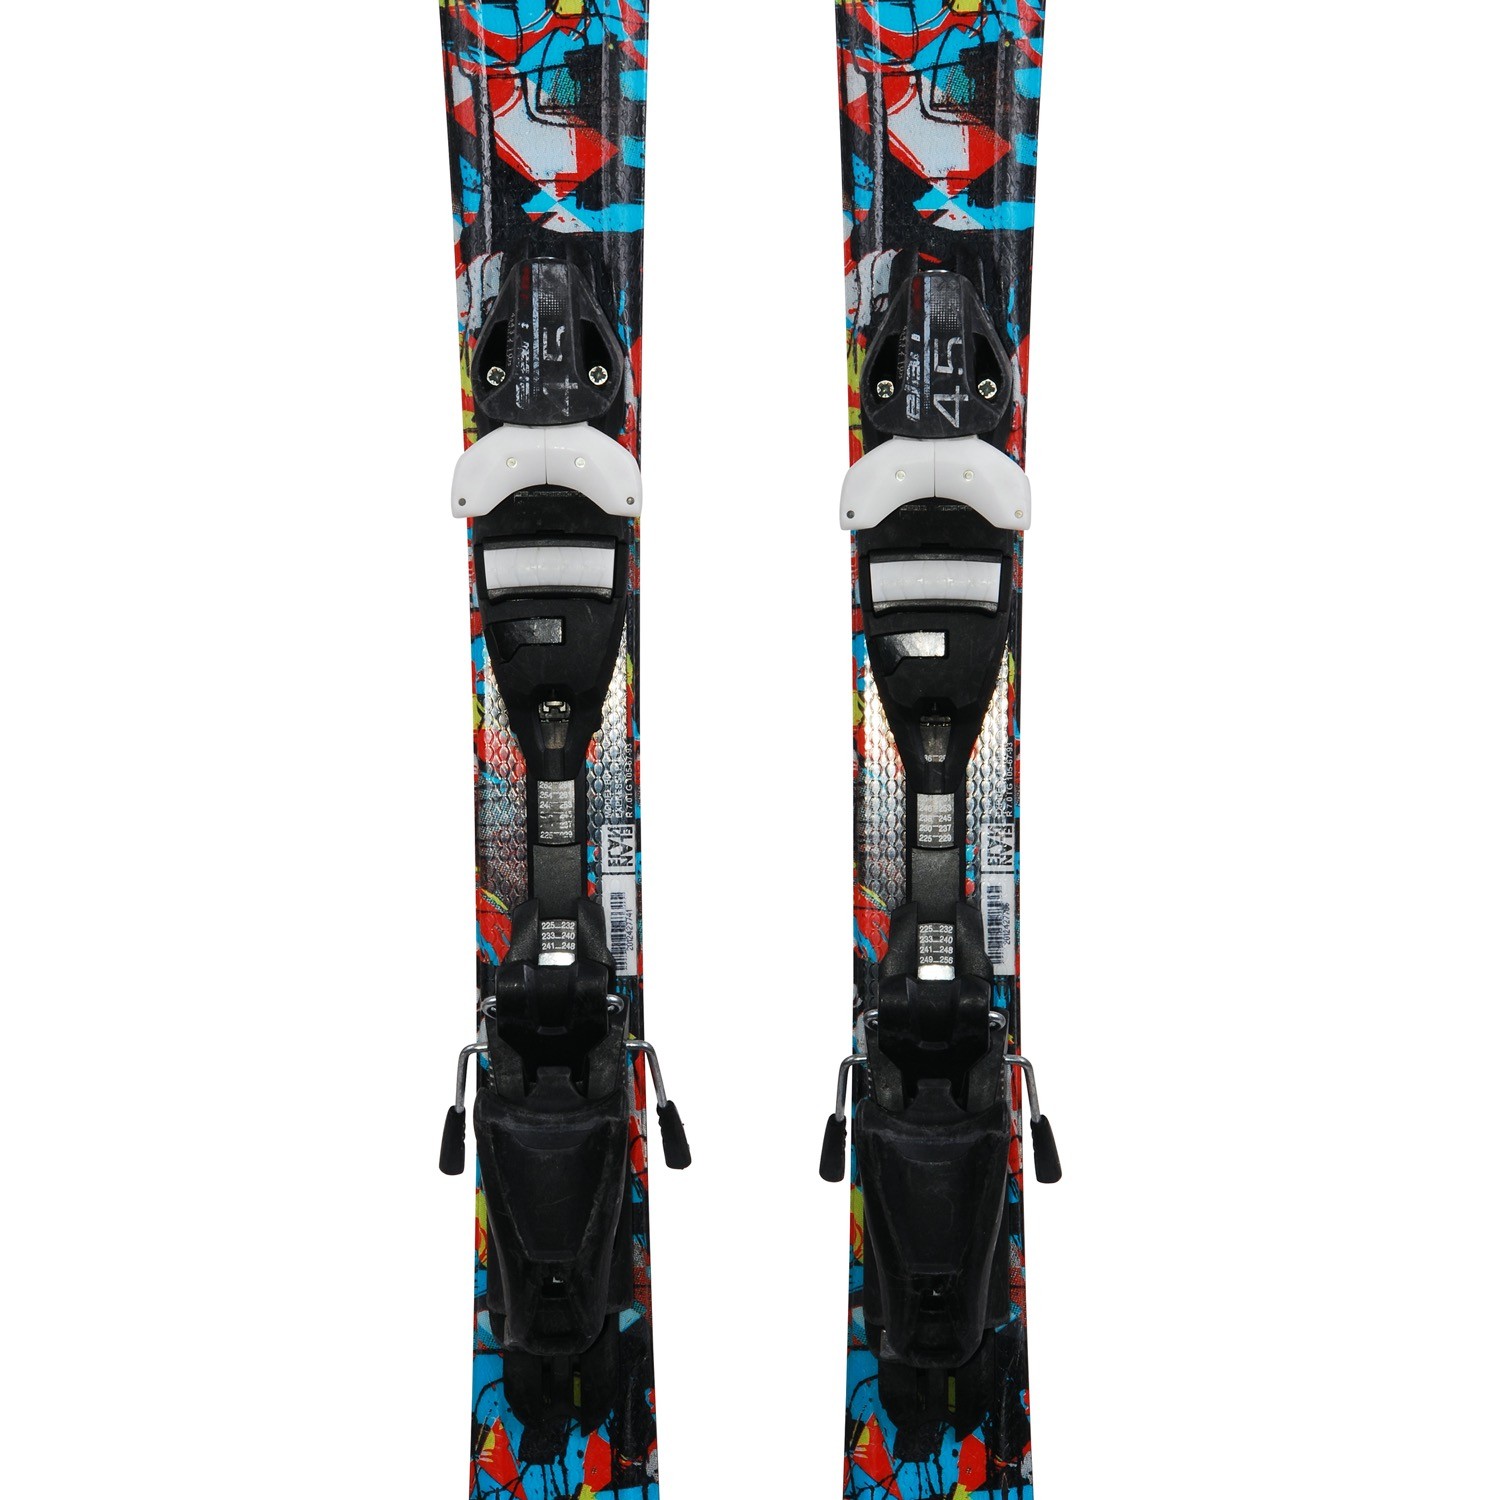 Qualität A Ski Junior Rossignol Star Wars Anlass ' Fixierungen 140 cm 